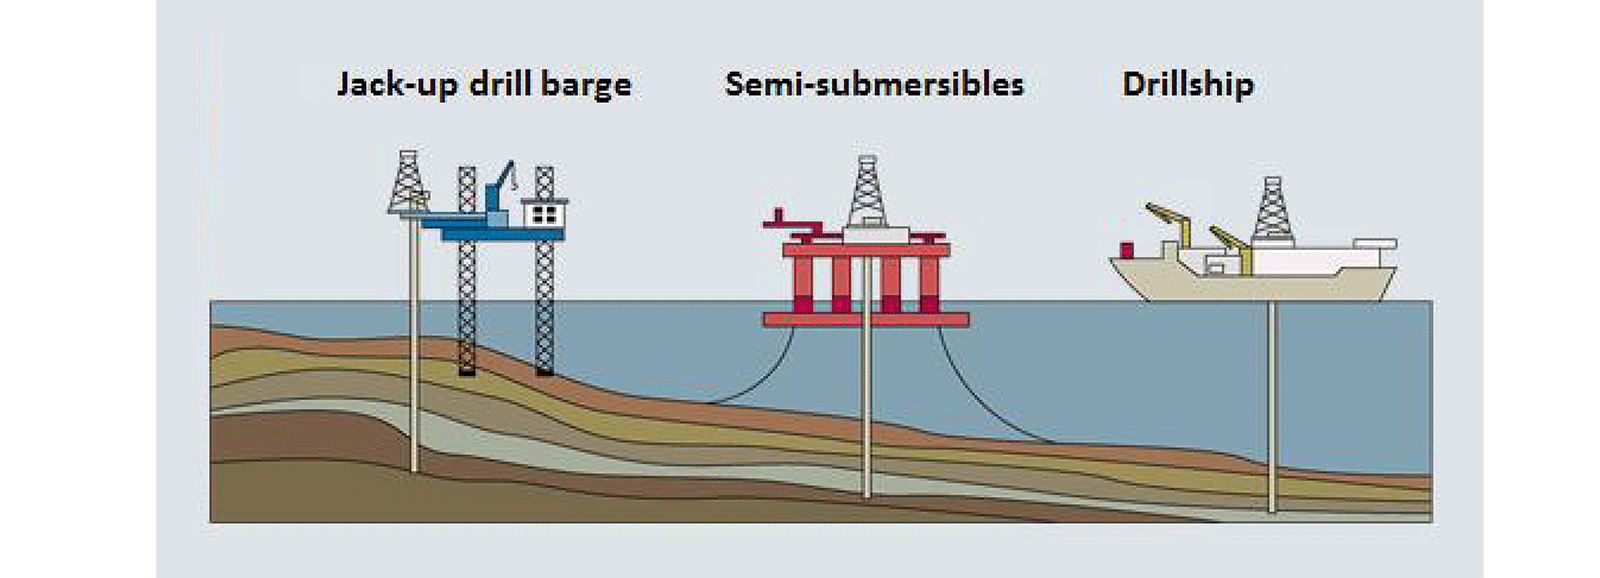 Offshore oil field